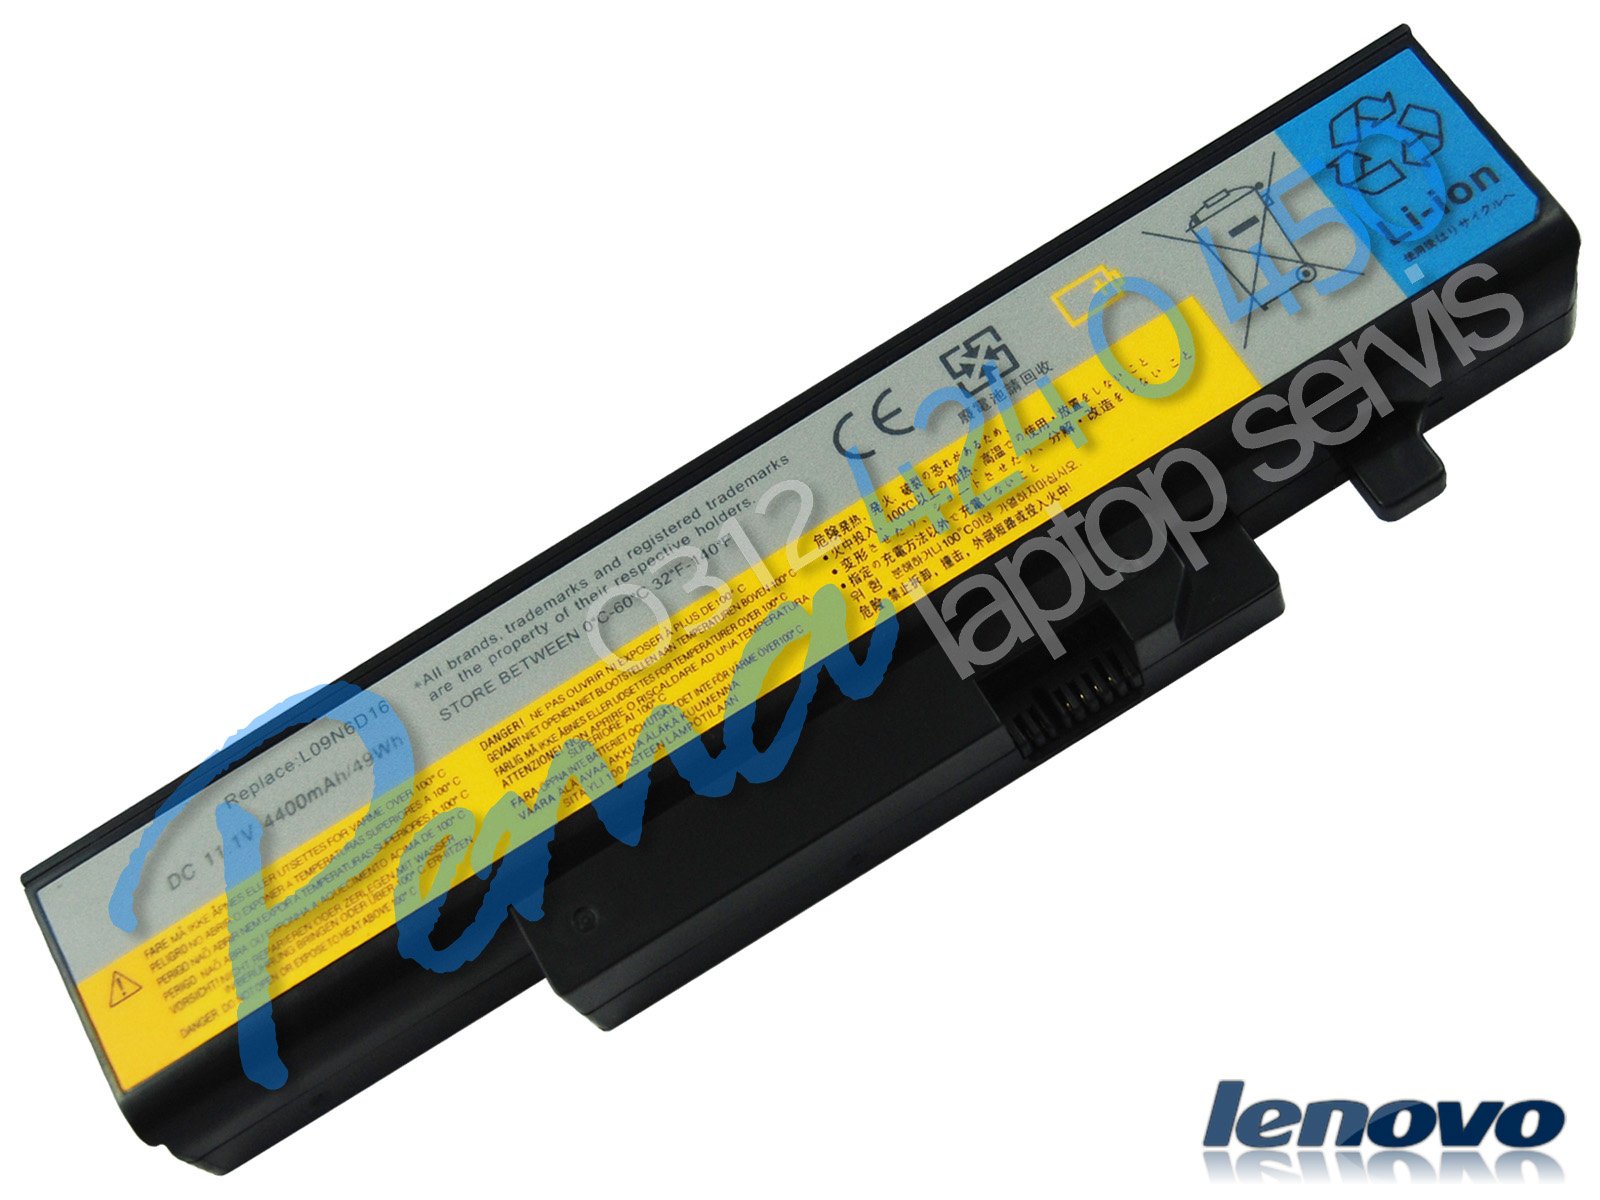 Lenovo Y560P batarya